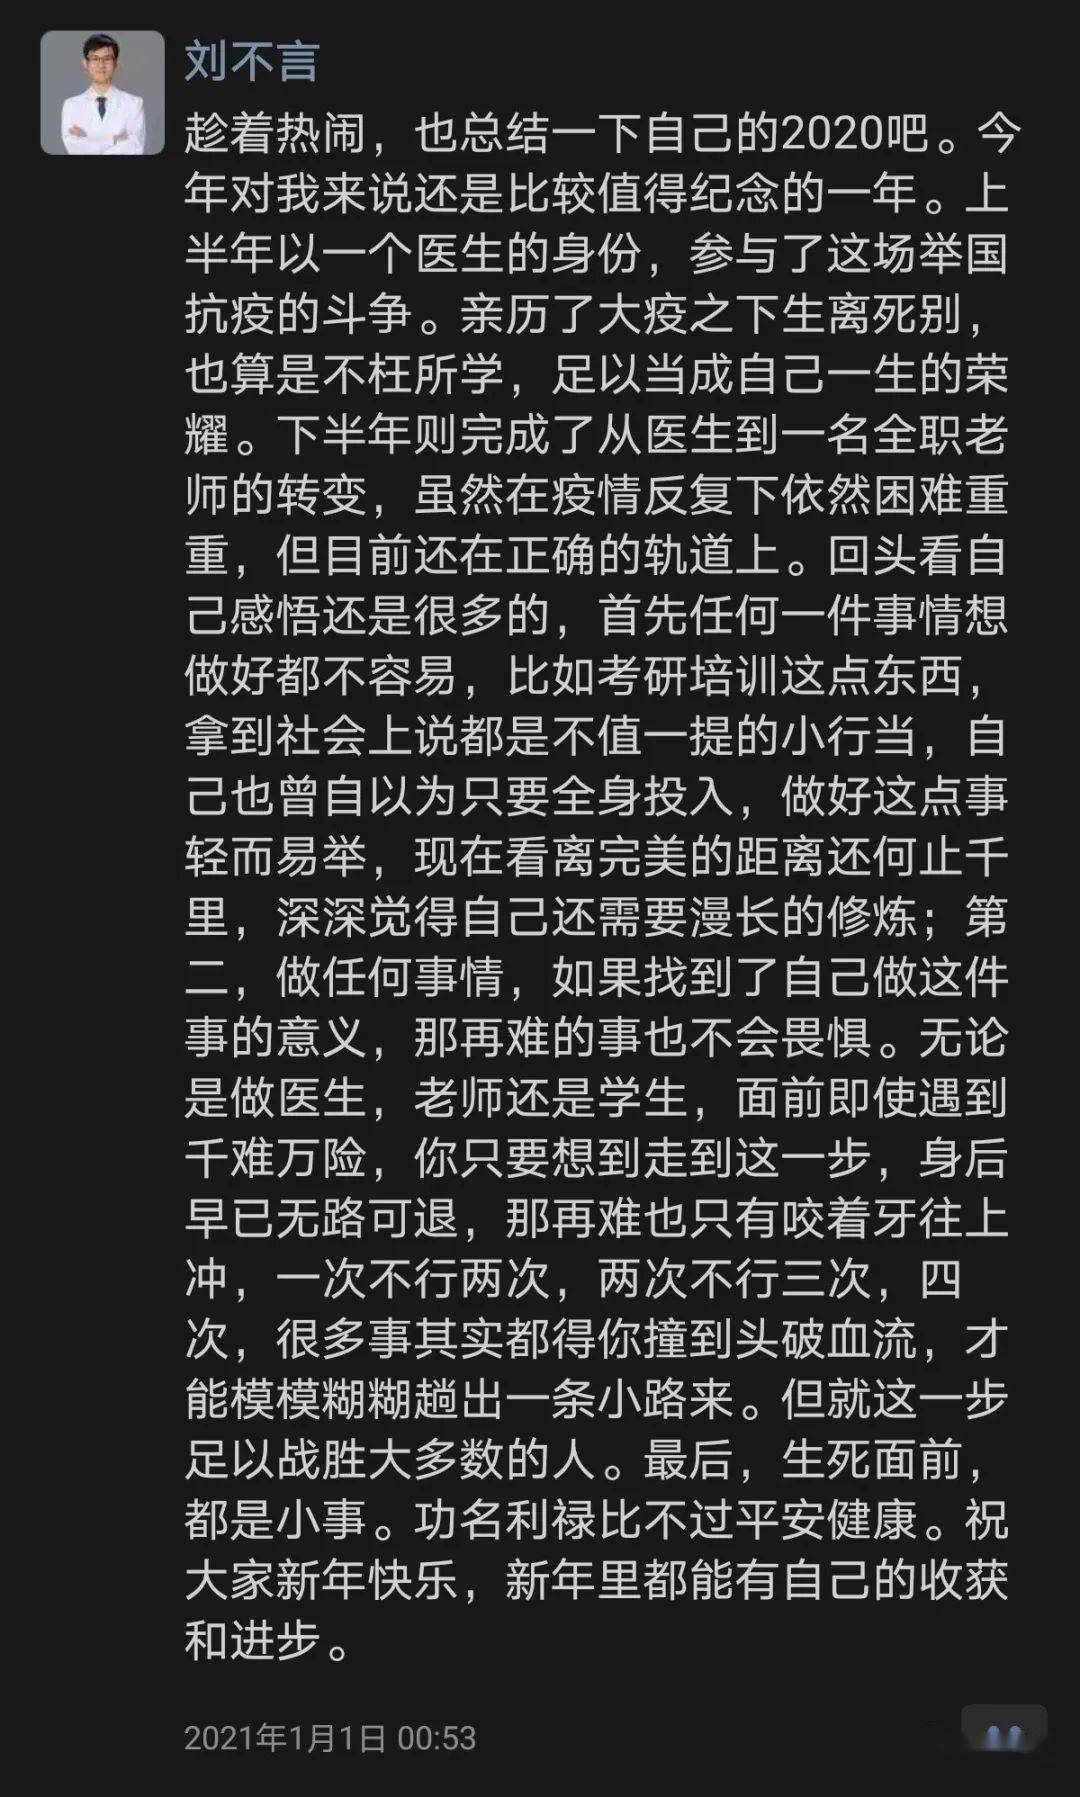 也没有讲不完的生化协和博士,考研名师刘不言,于3月12日不幸遭遇车祸